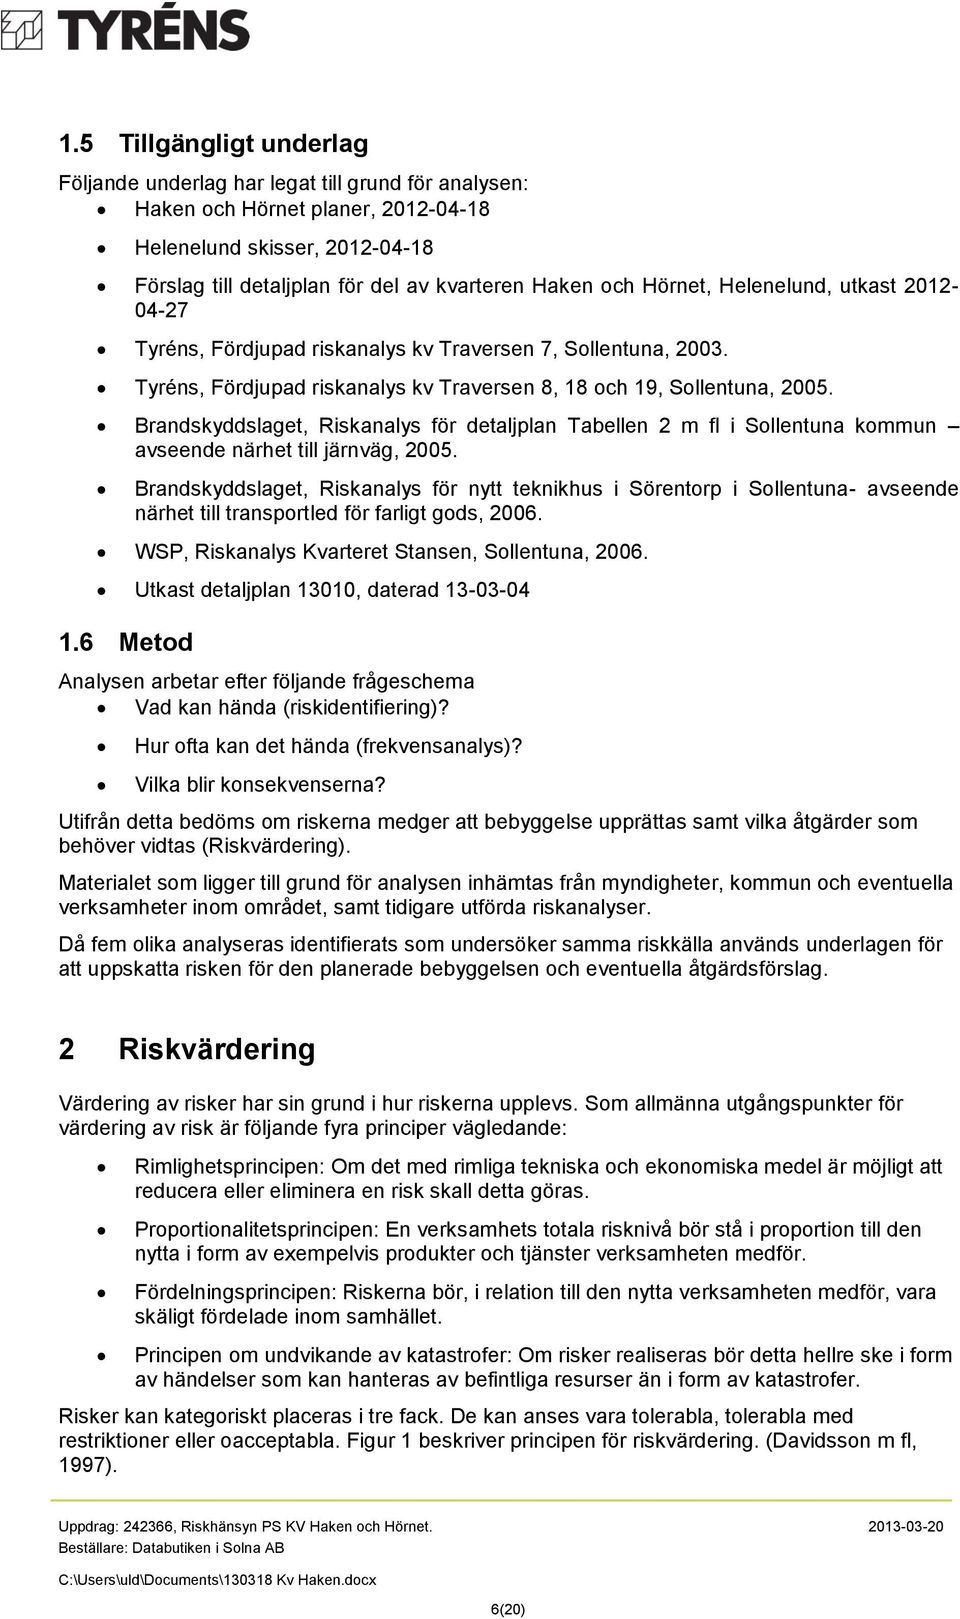 Brandskyddslaget, Riskanalys för detaljplan Tabellen 2 m fl i Sollentuna kommun avseende närhet till järnväg, 2005.